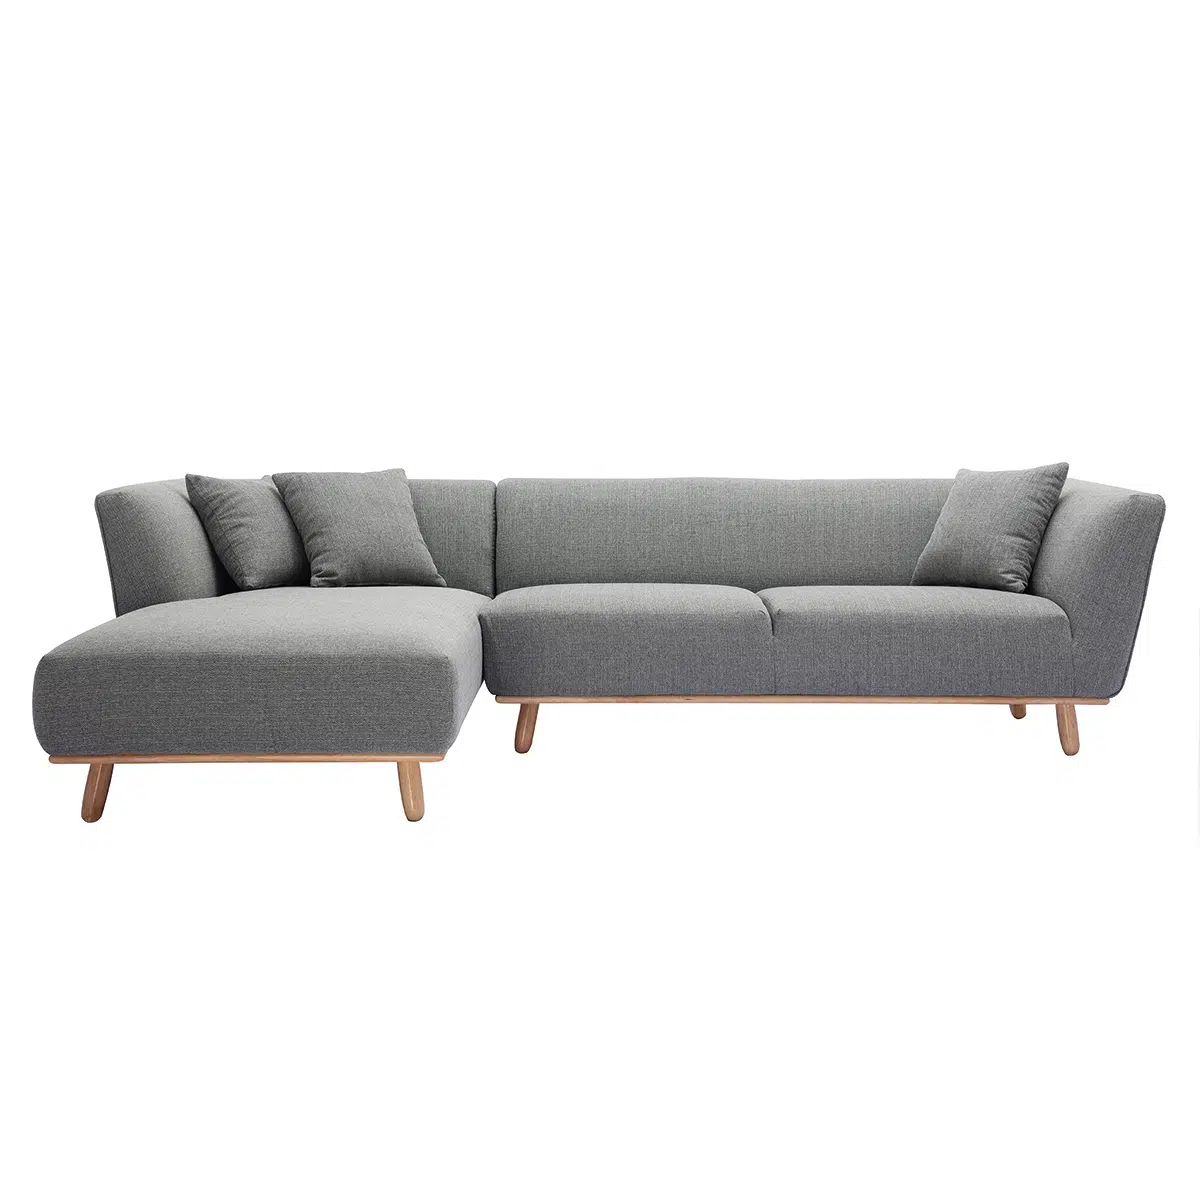 Canapé d'angle gauche scandinave 5 places en tissu gris et bois clair STUART